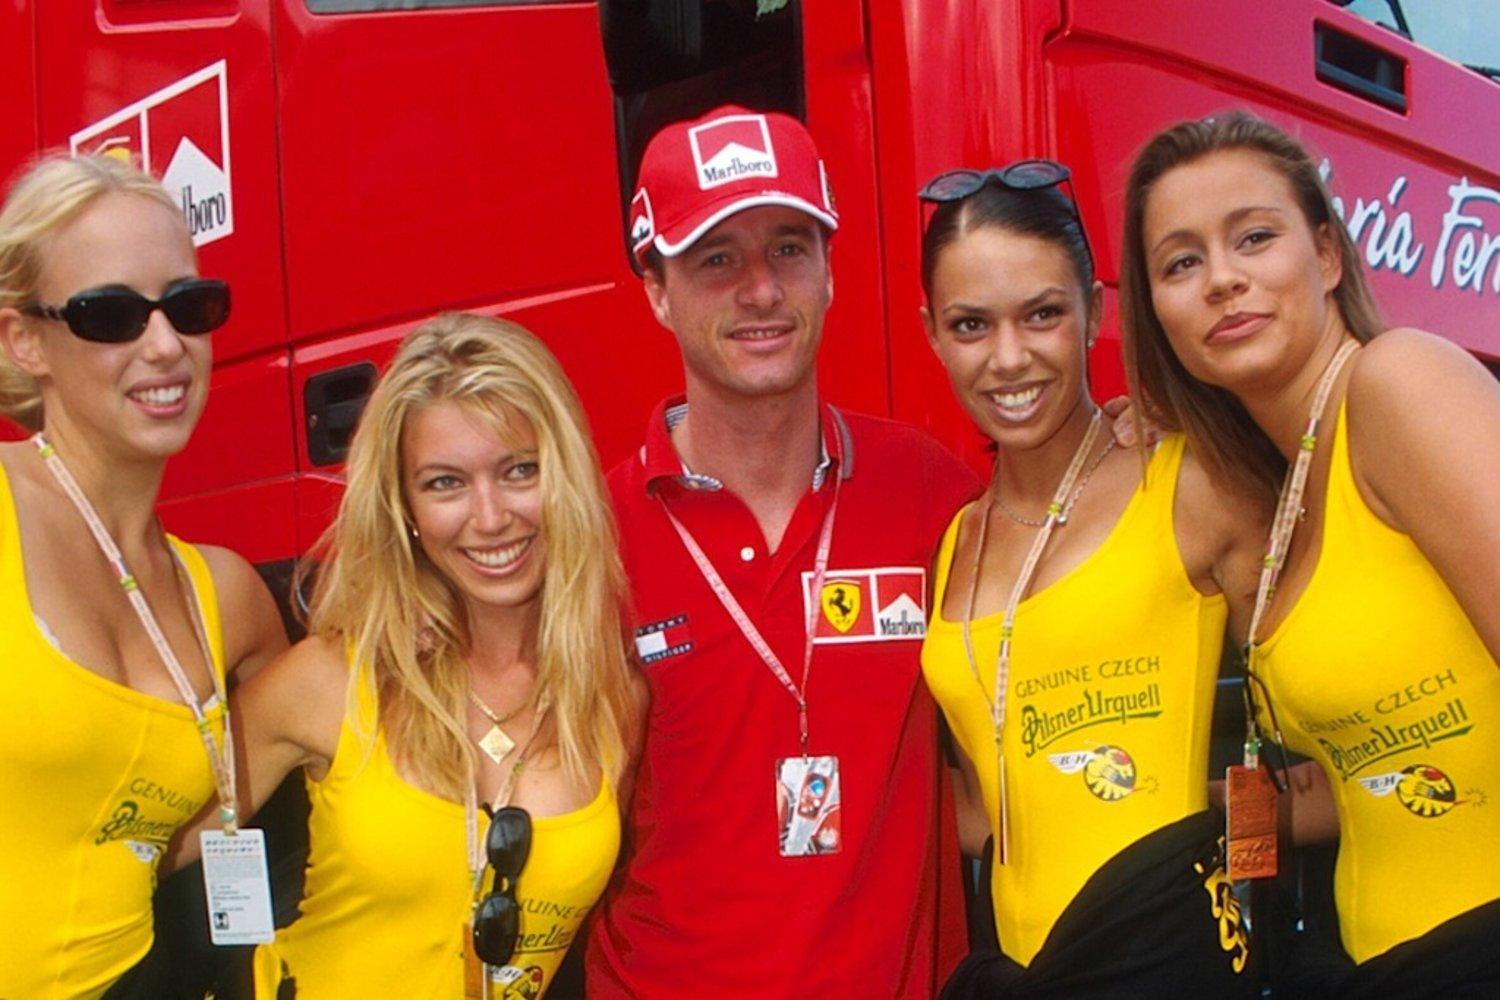 Eddie Irvine with four girls.